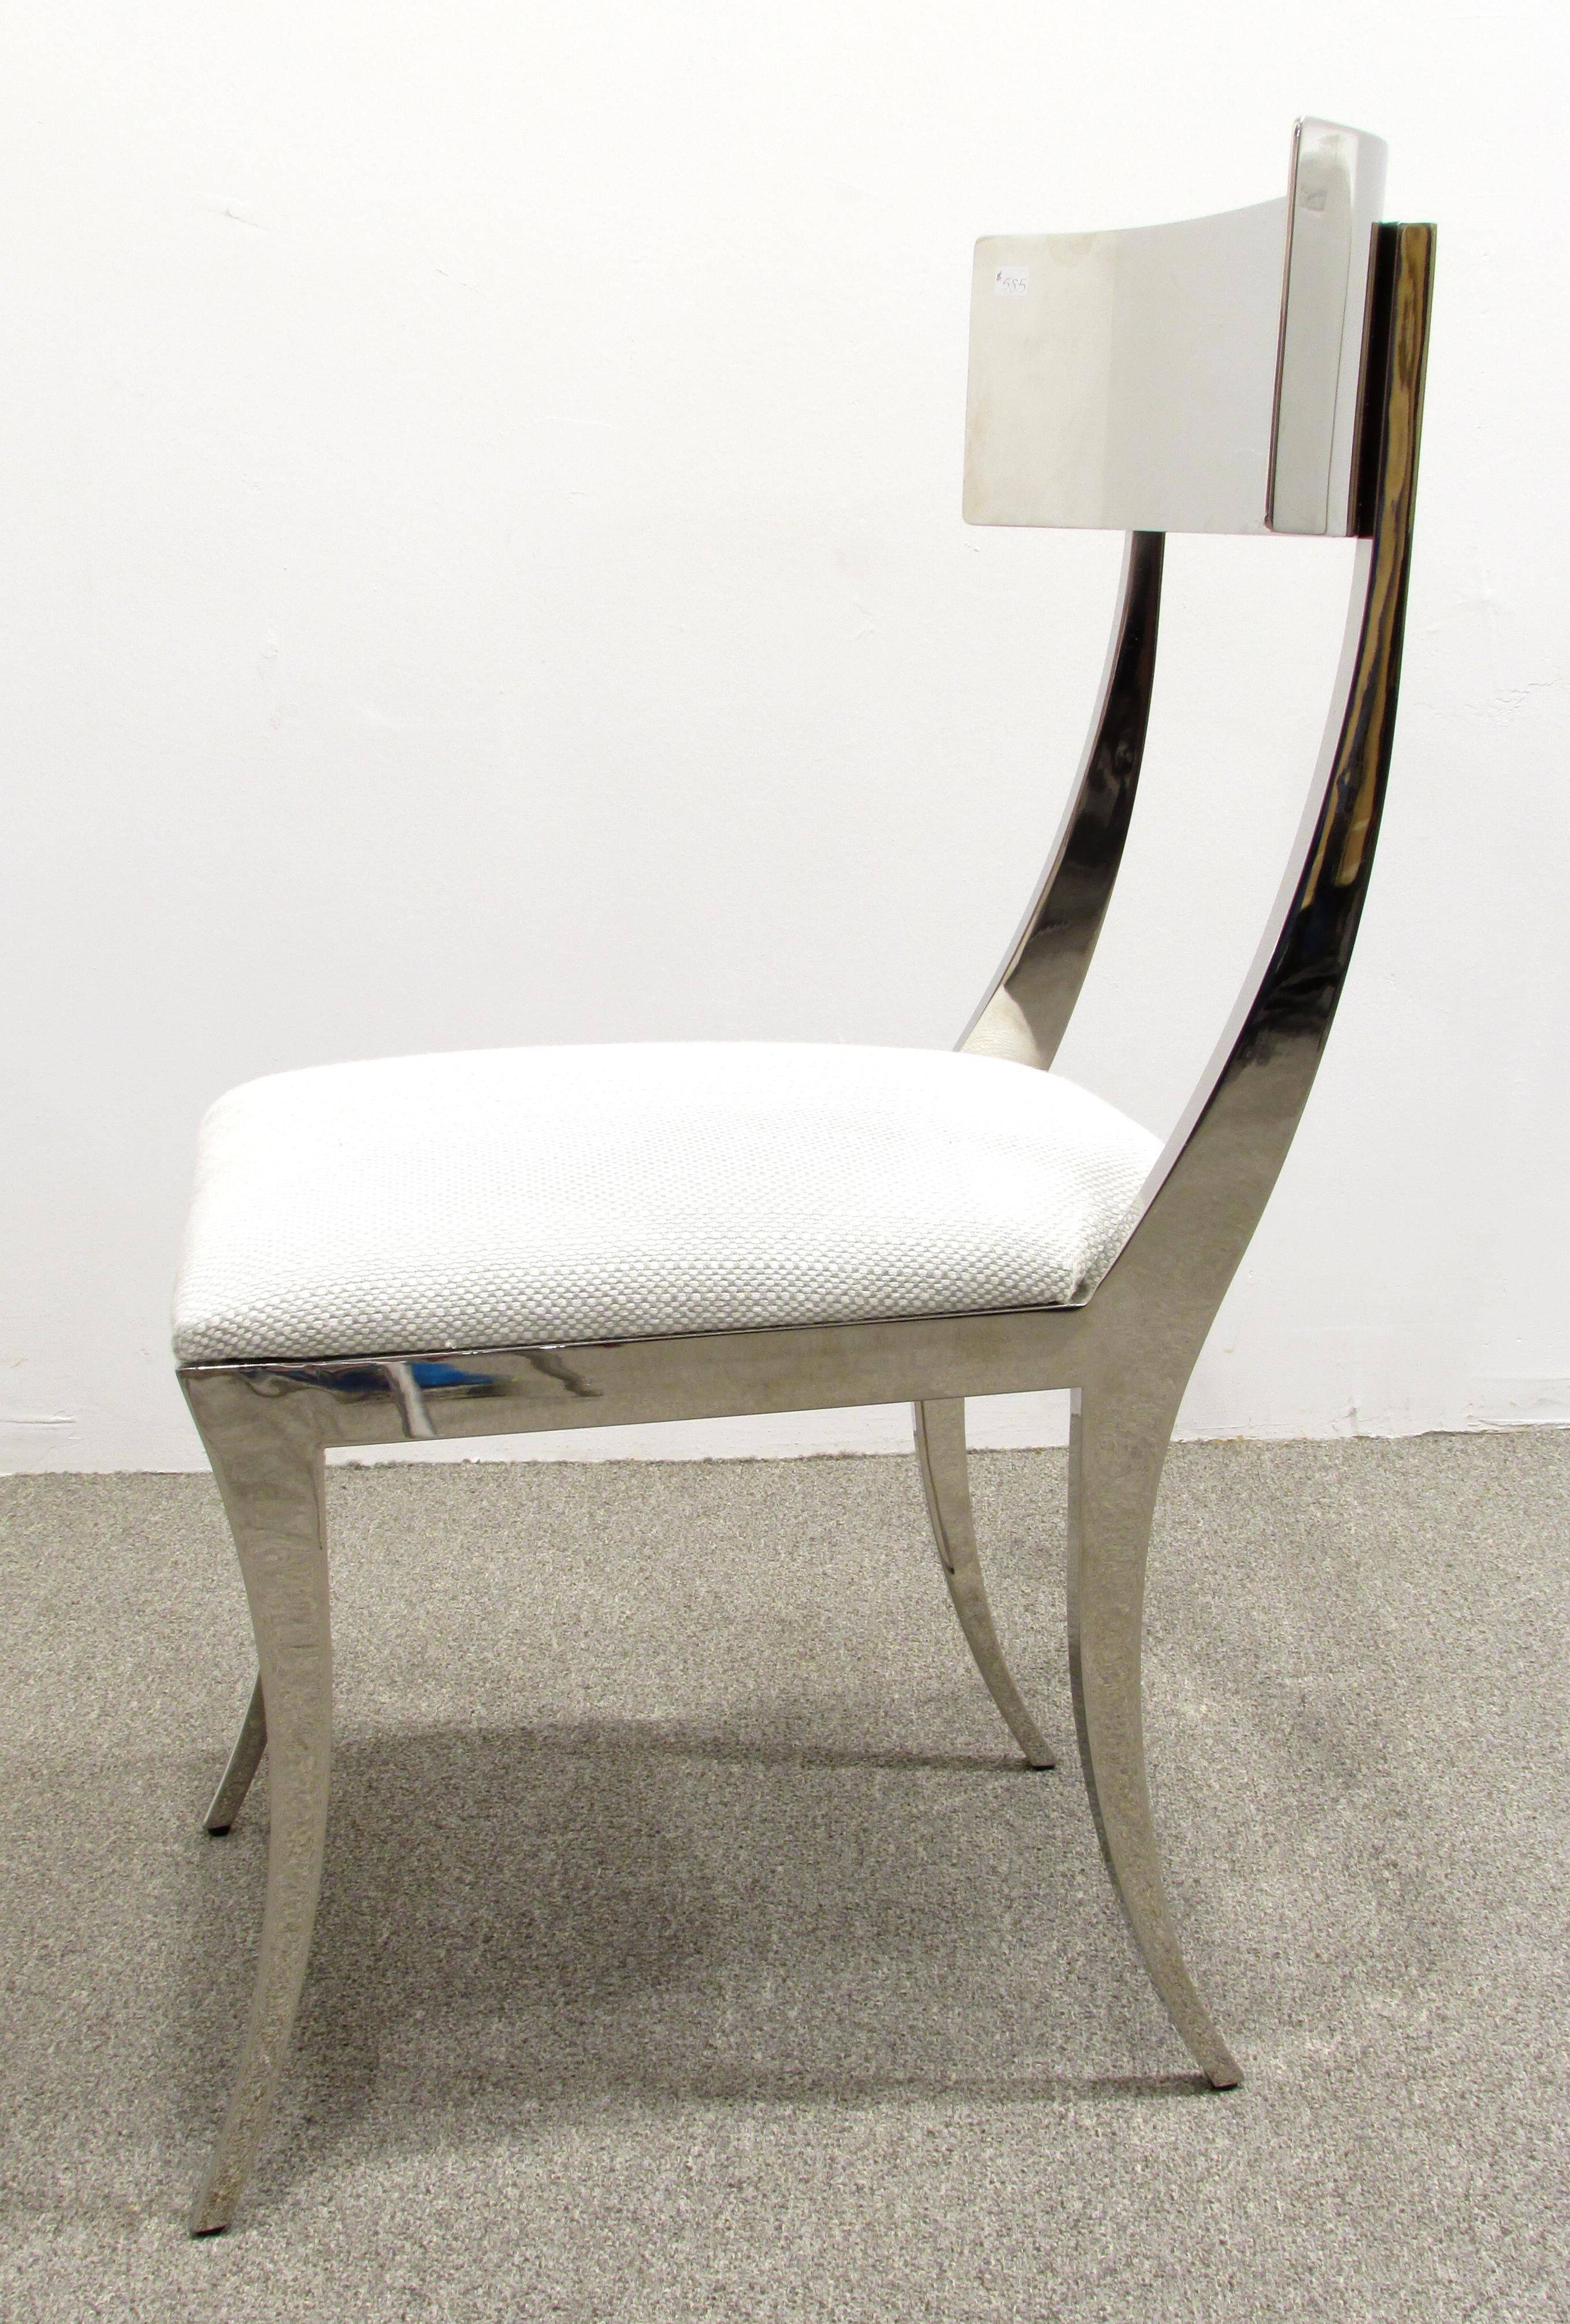 Contemporary Chrome Klismos Chair